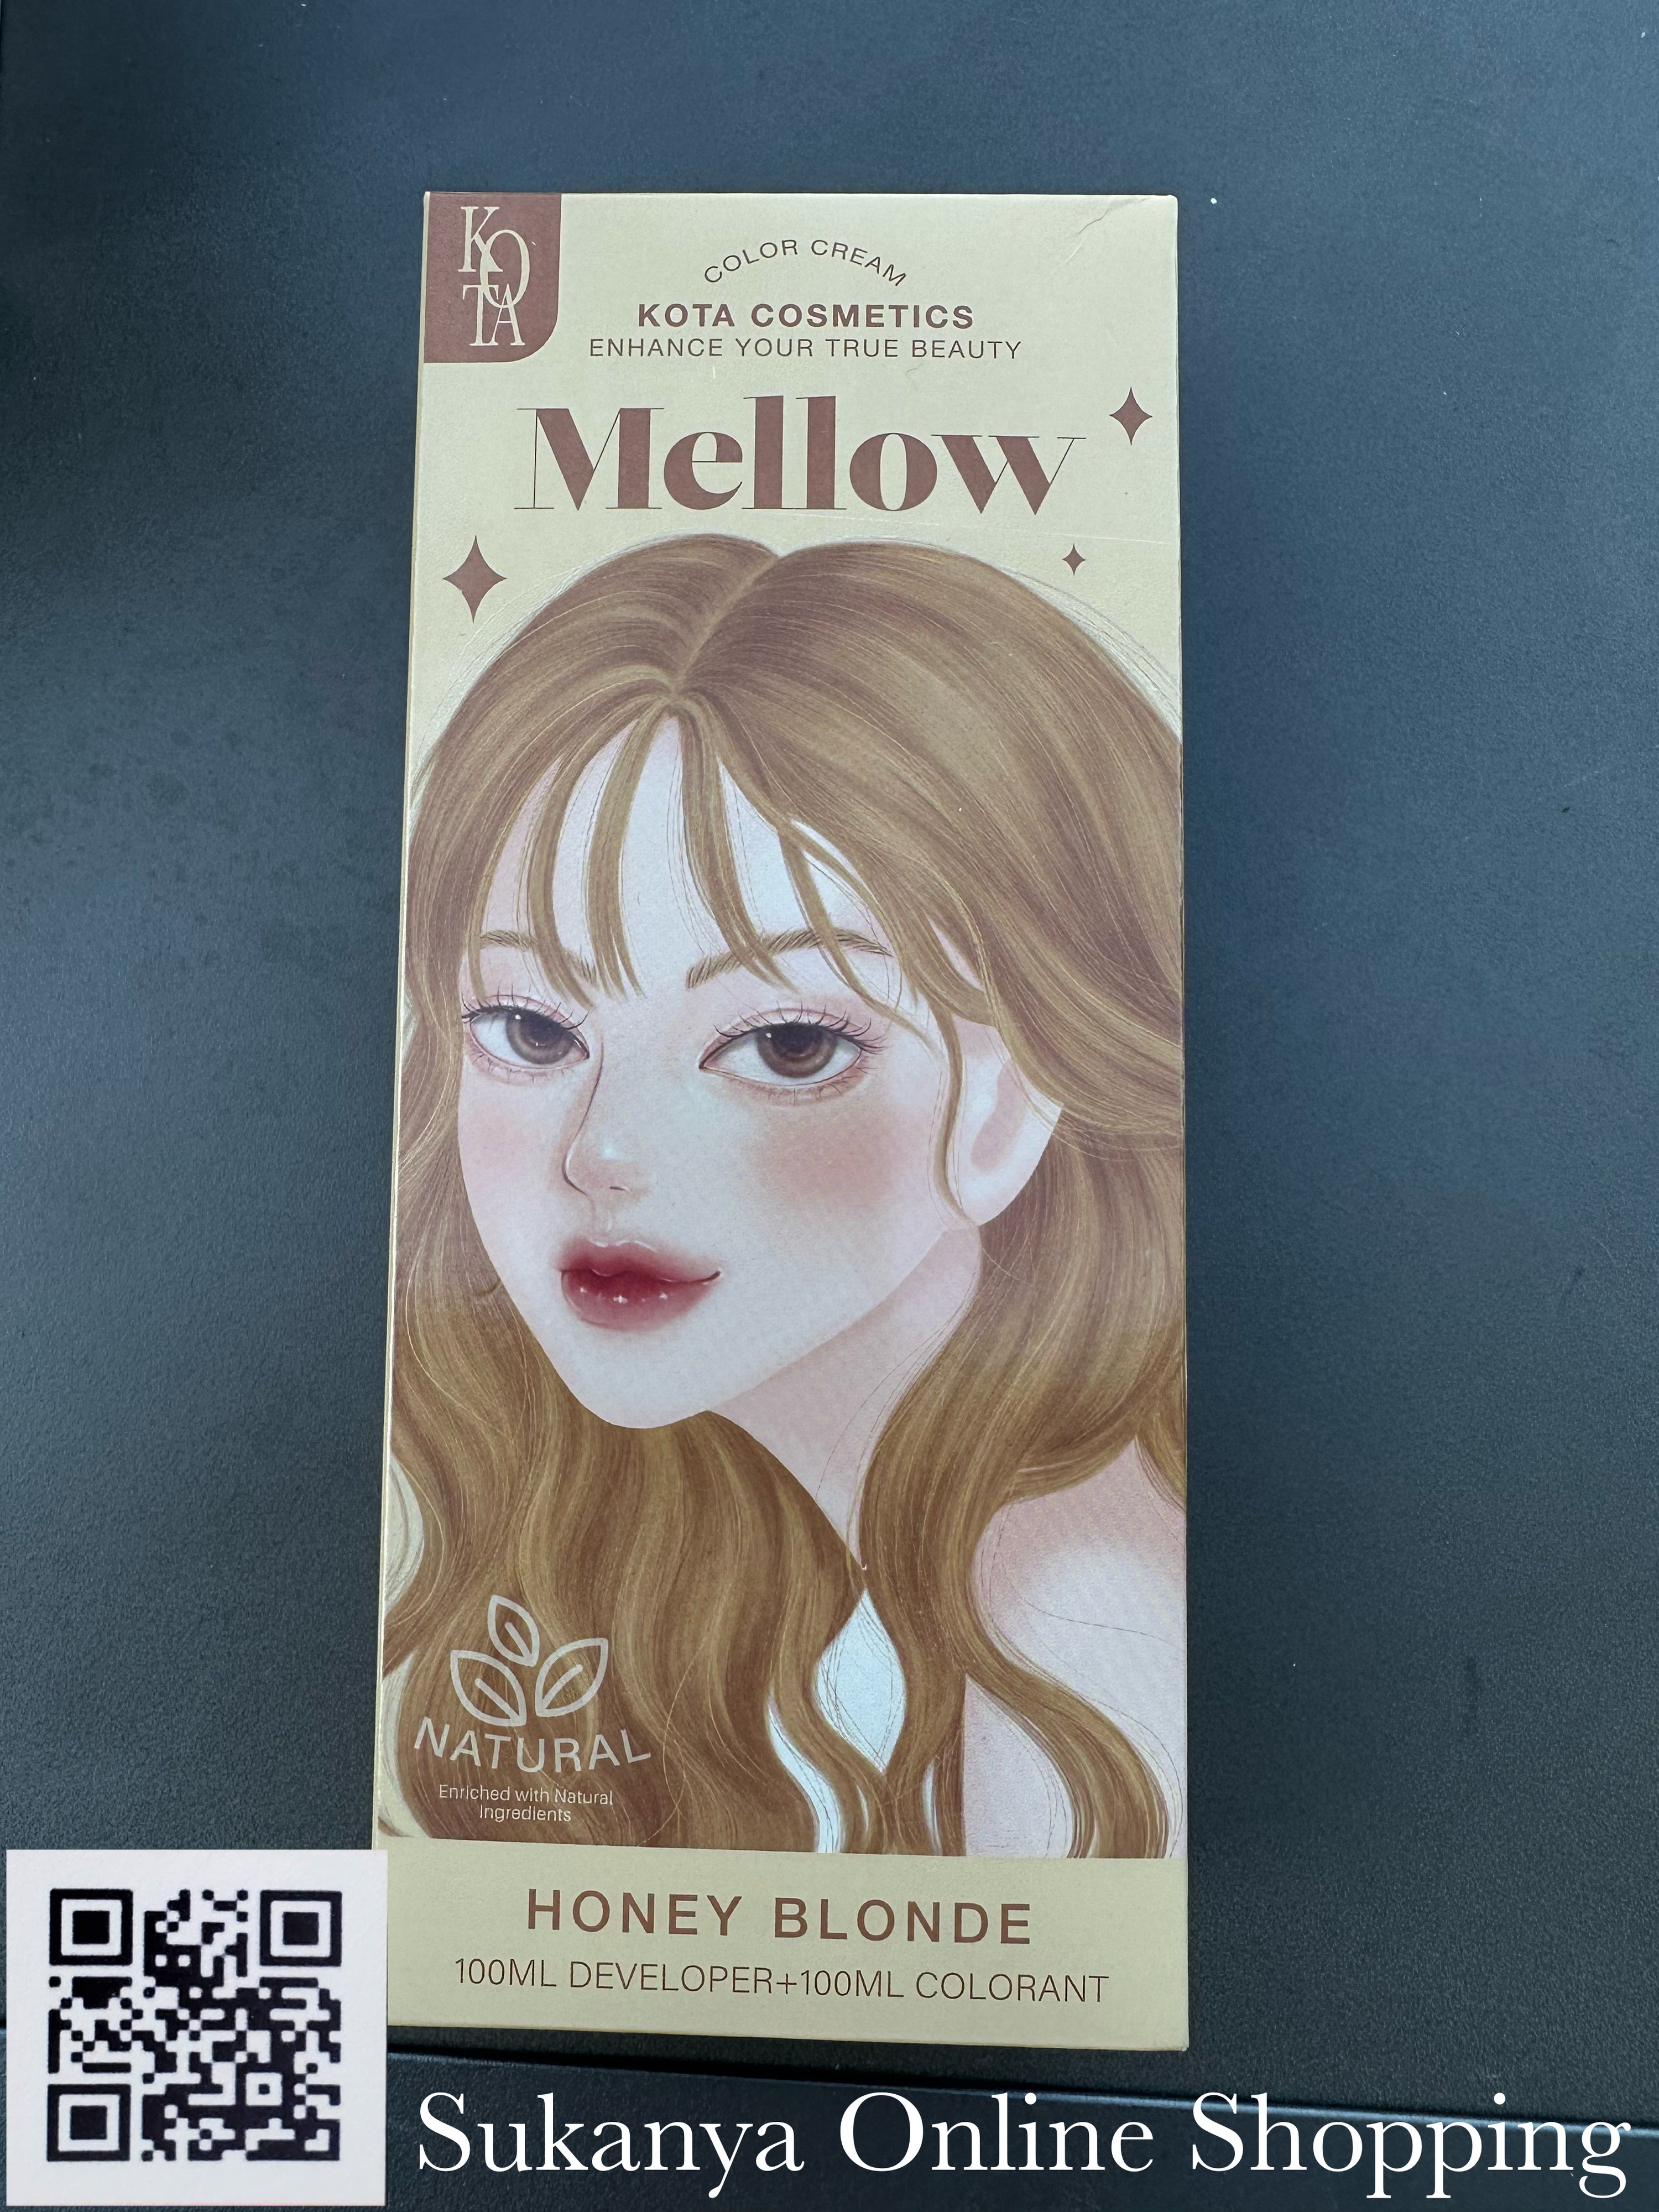 ยาย้อมผม- โคทา คอสเมติก คัลเลอร์ ครีม เมลโลว (ฮันนี่ บลอนด์)- Kota Cosmetic Color Cream Mellow (Honey Blonde)